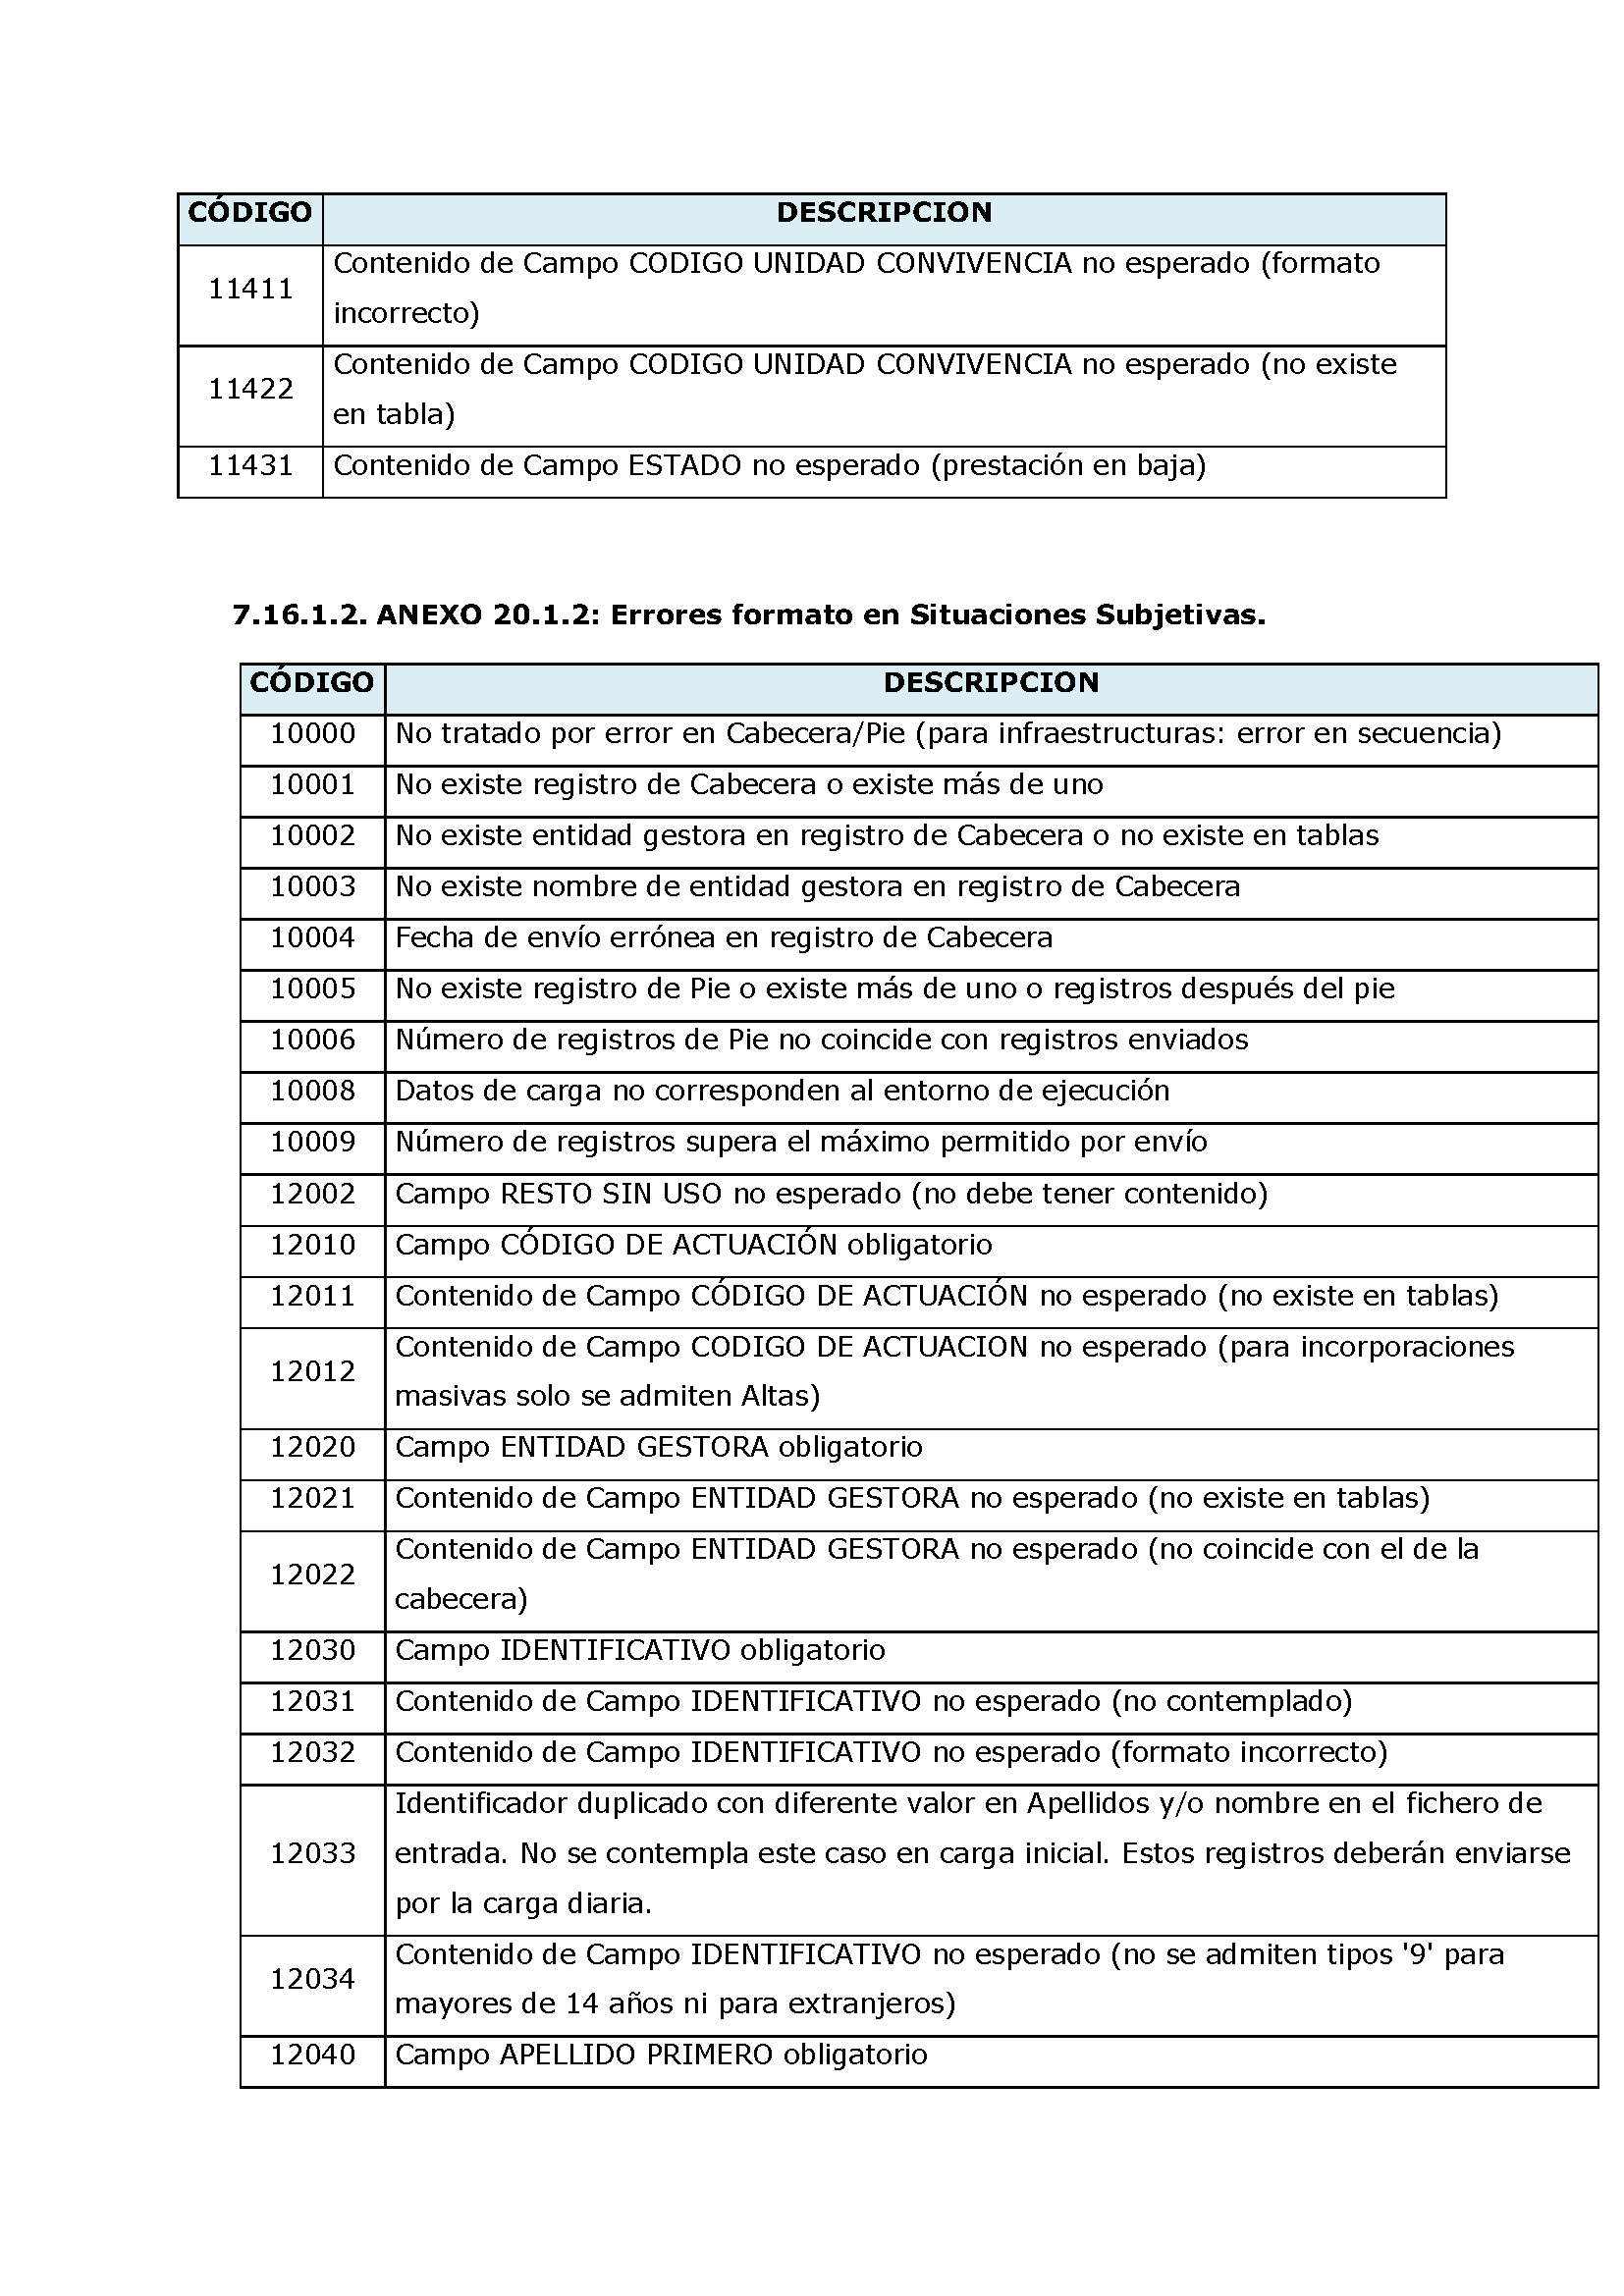 ANEXOS PROTOCOLO DE INTERCAMBIO DE FICHEROS PARA LA CARGA DE DATOS EN TARJETA SOCIAL DIGITAL Pag 97